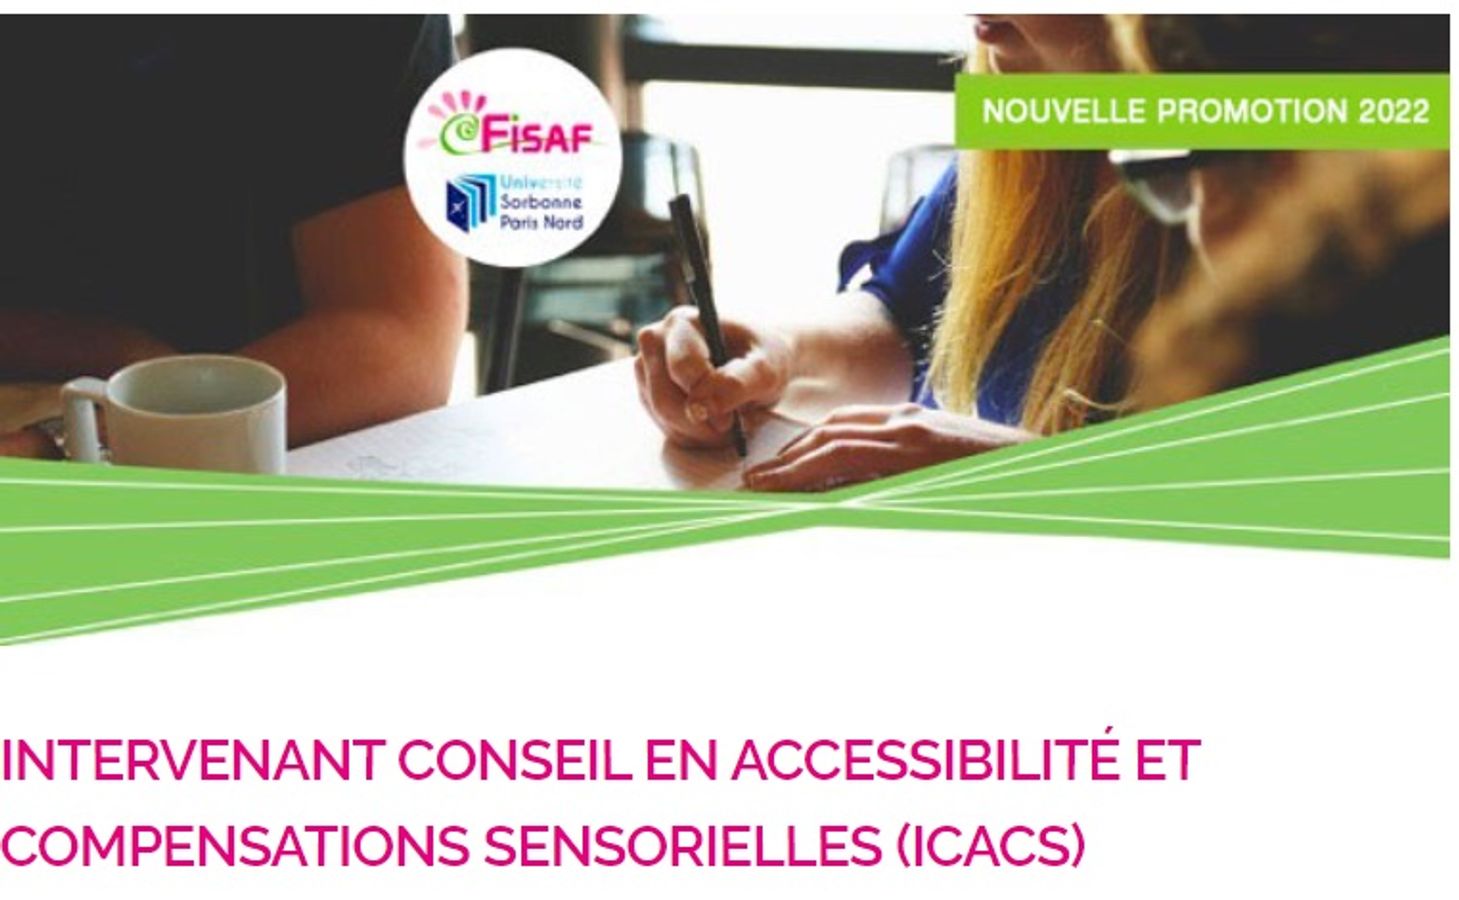  Webinaire de présentation de la licence universitaire Paris XIII/FISAF  Intervenant Conseil en Accessibilité et Compensation mention Sciences de l’Education Université